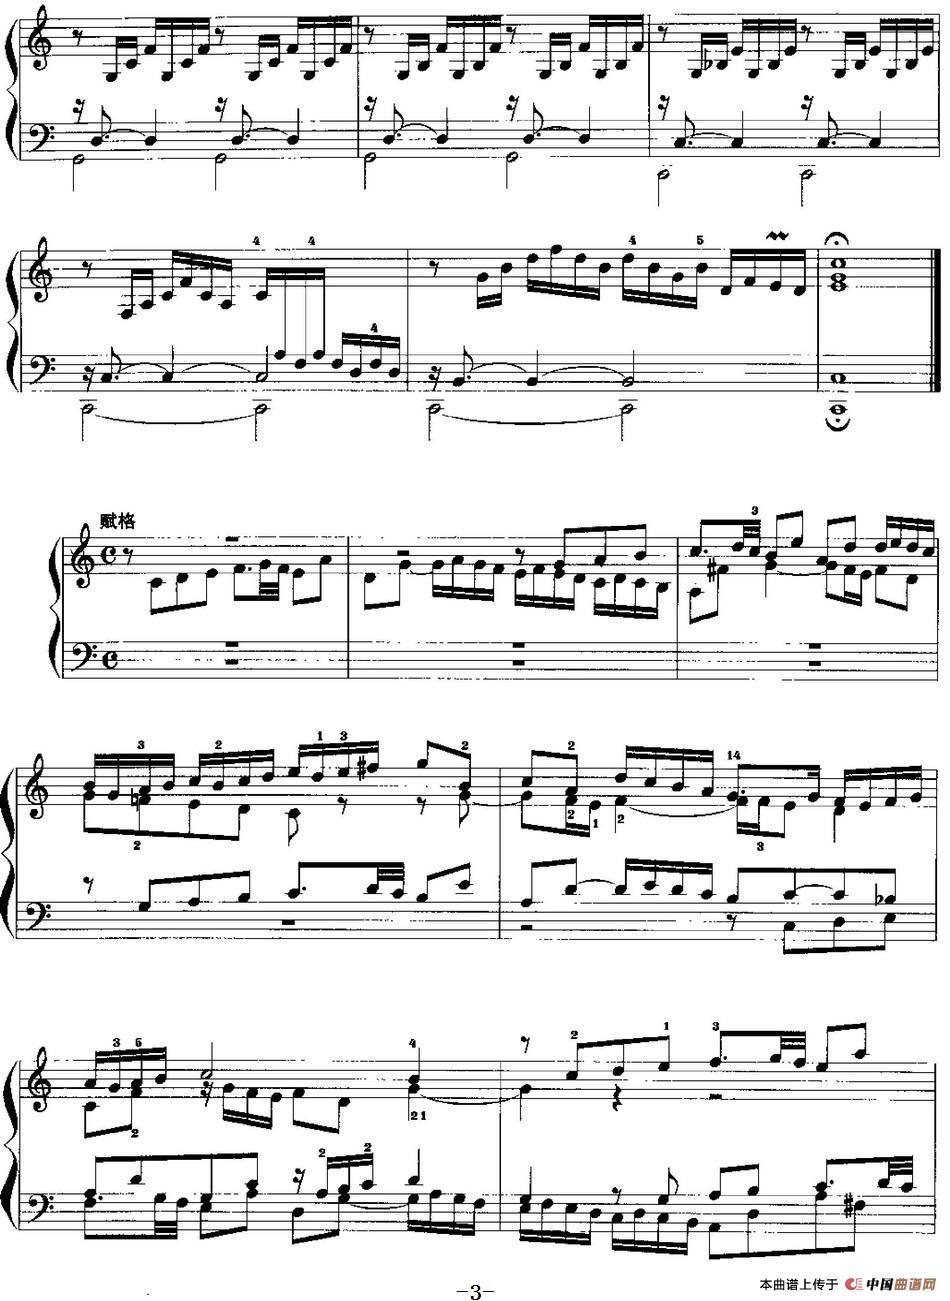 手风琴复调作品：C大调前奏曲与赋格手风琴谱（线简谱对照、带指法版）